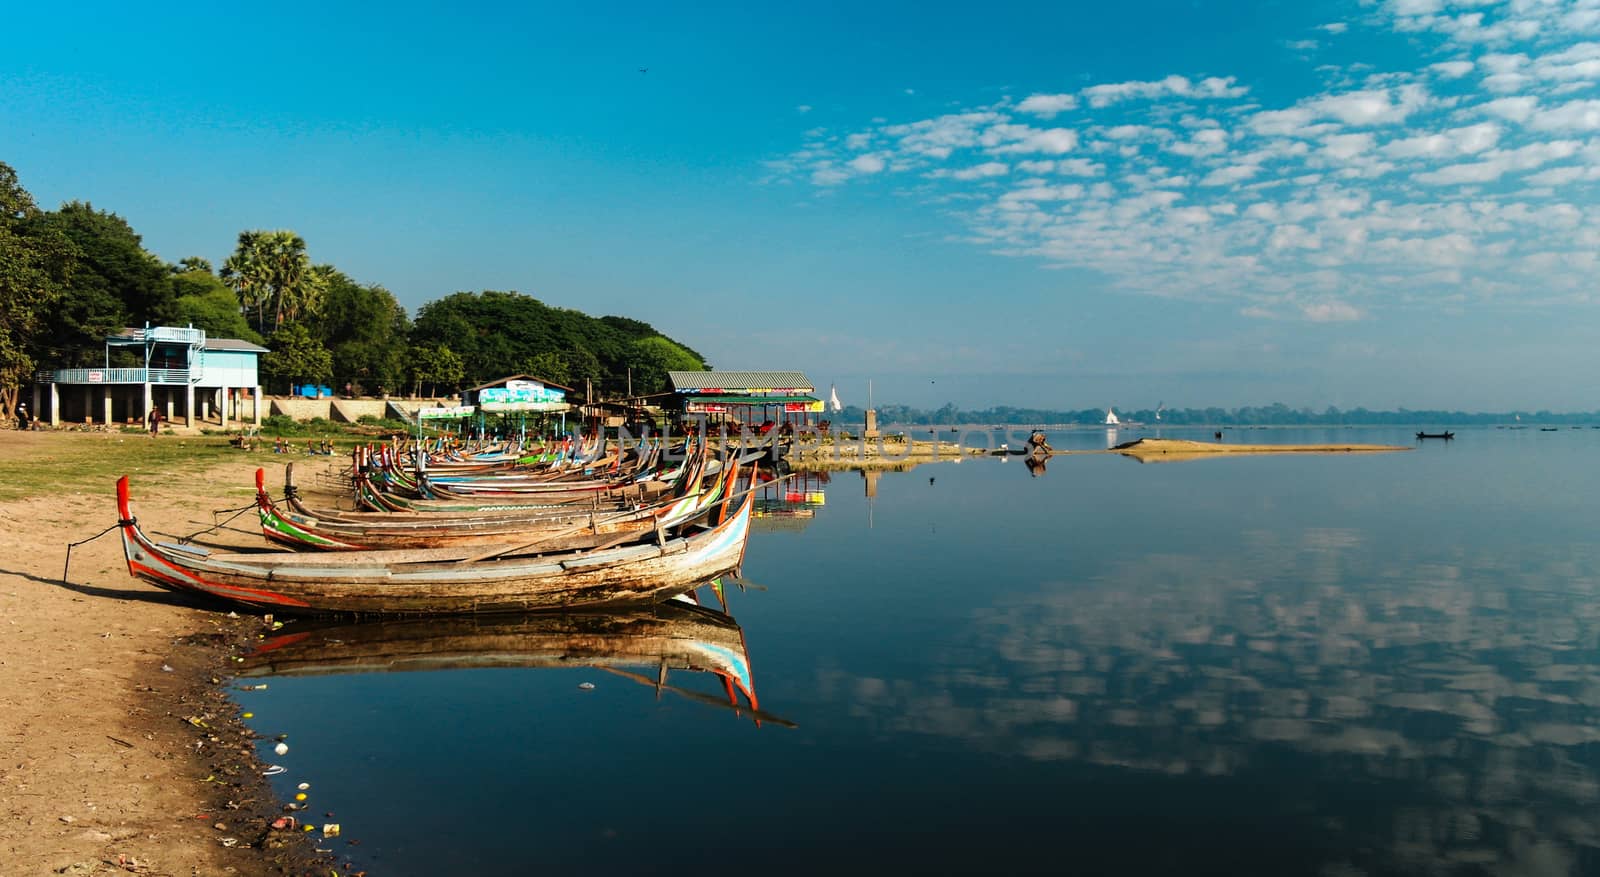 Boats near Taungthaman shore, Amarapura, Mandalay Myanmar